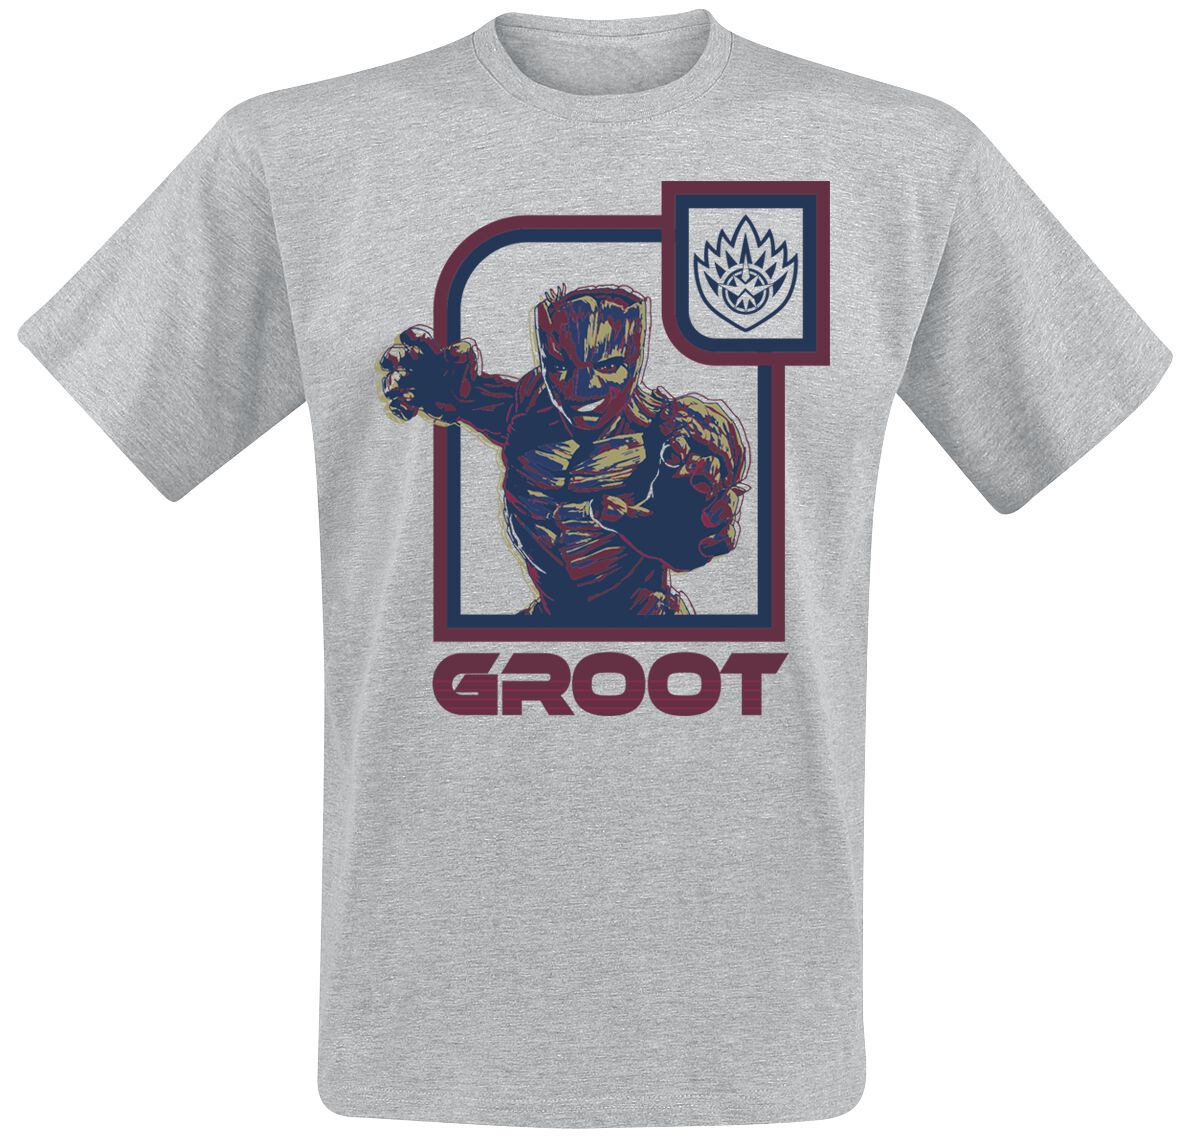 Guardians Of The Galaxy - Marvel T-Shirt - Vol. 3 - Groot - S bis XXL - für Männer - Größe M - grau  - EMP exklusives Merchandise!